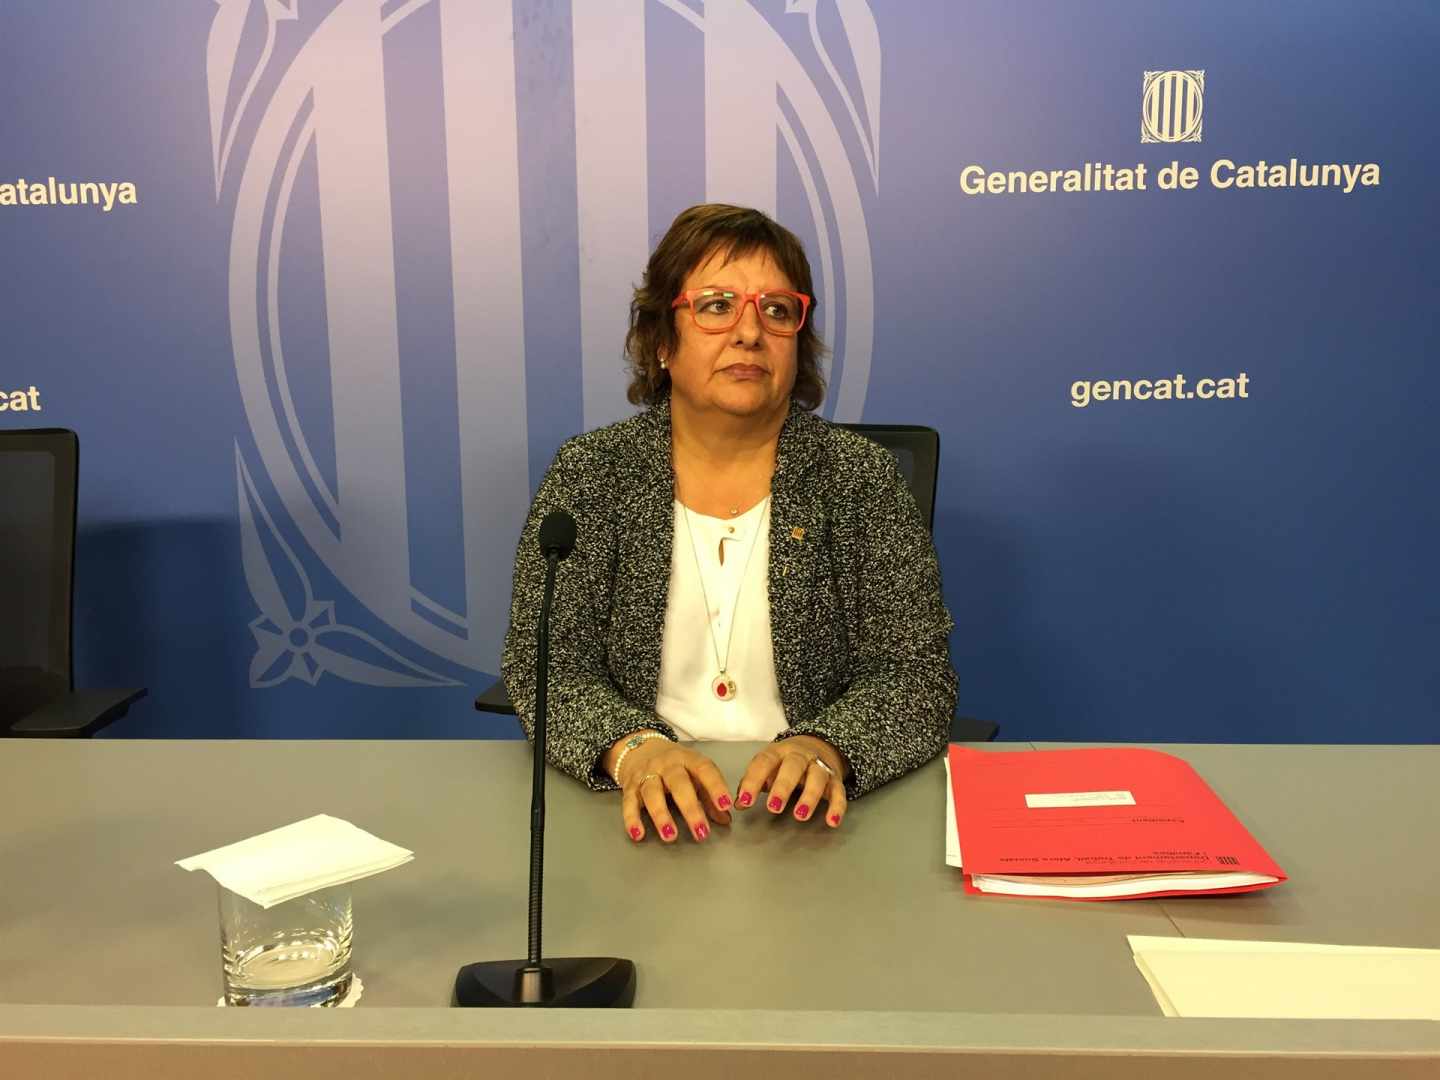 La ex 'consellera' Dolors Bassa vuelve a la cárcel tras visitar a su madre en un hospital de Girona